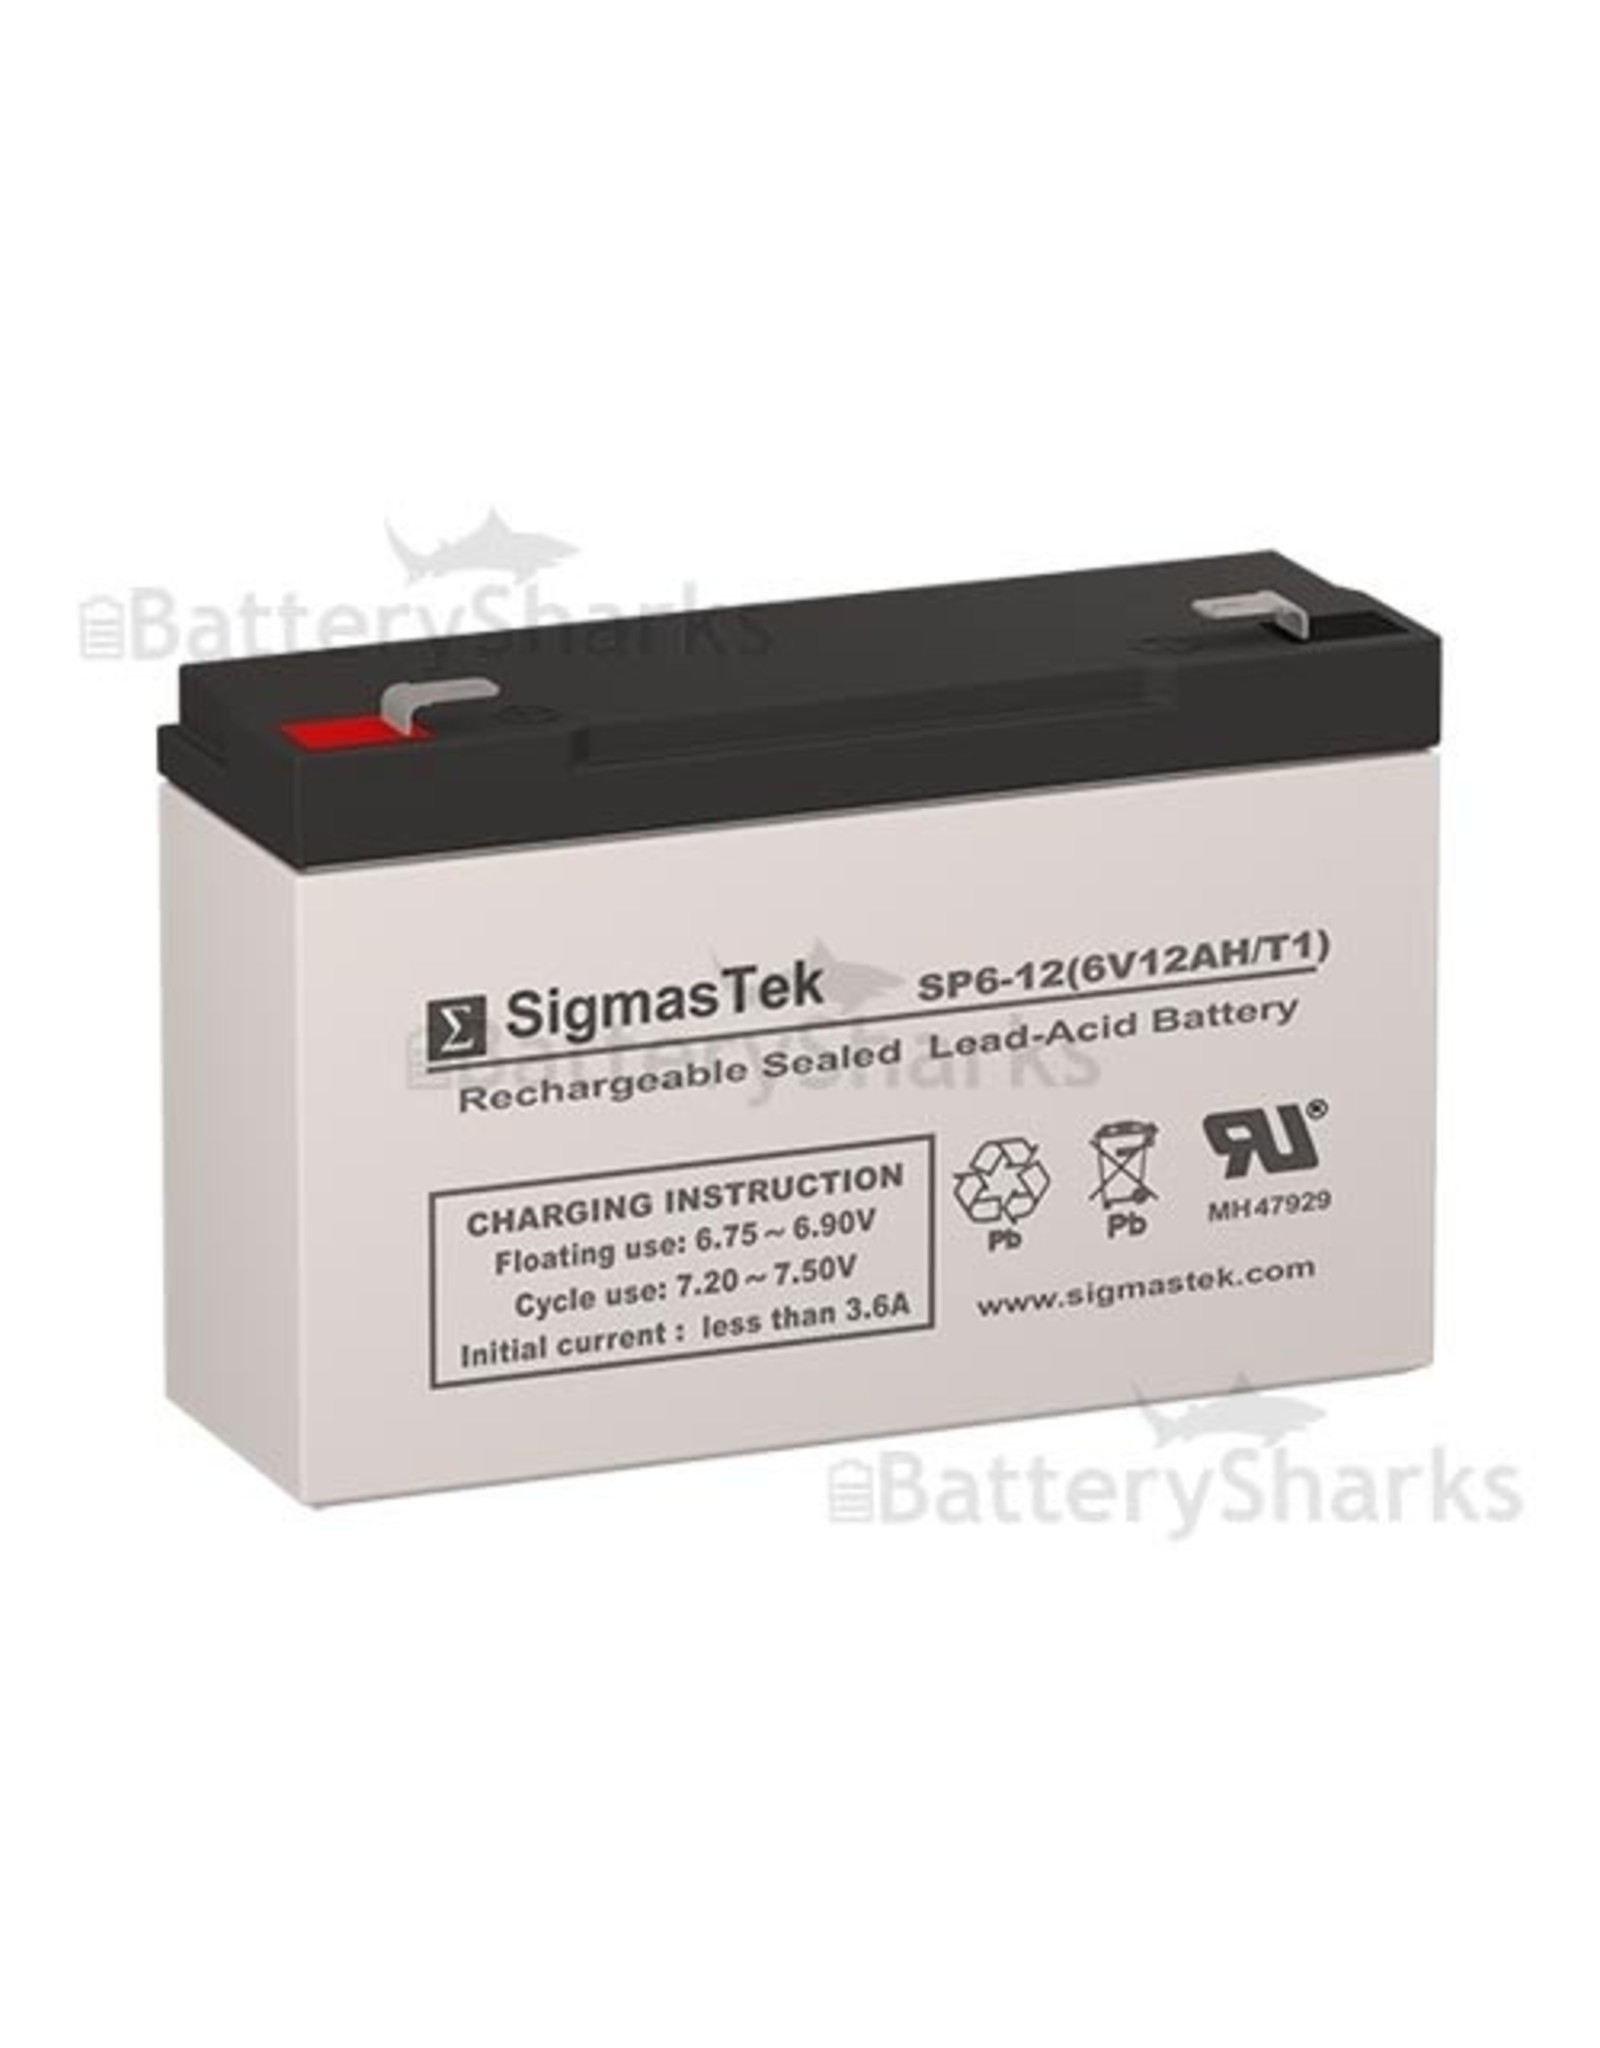 Battery Shark Livewell Battery, 6V, 12AH